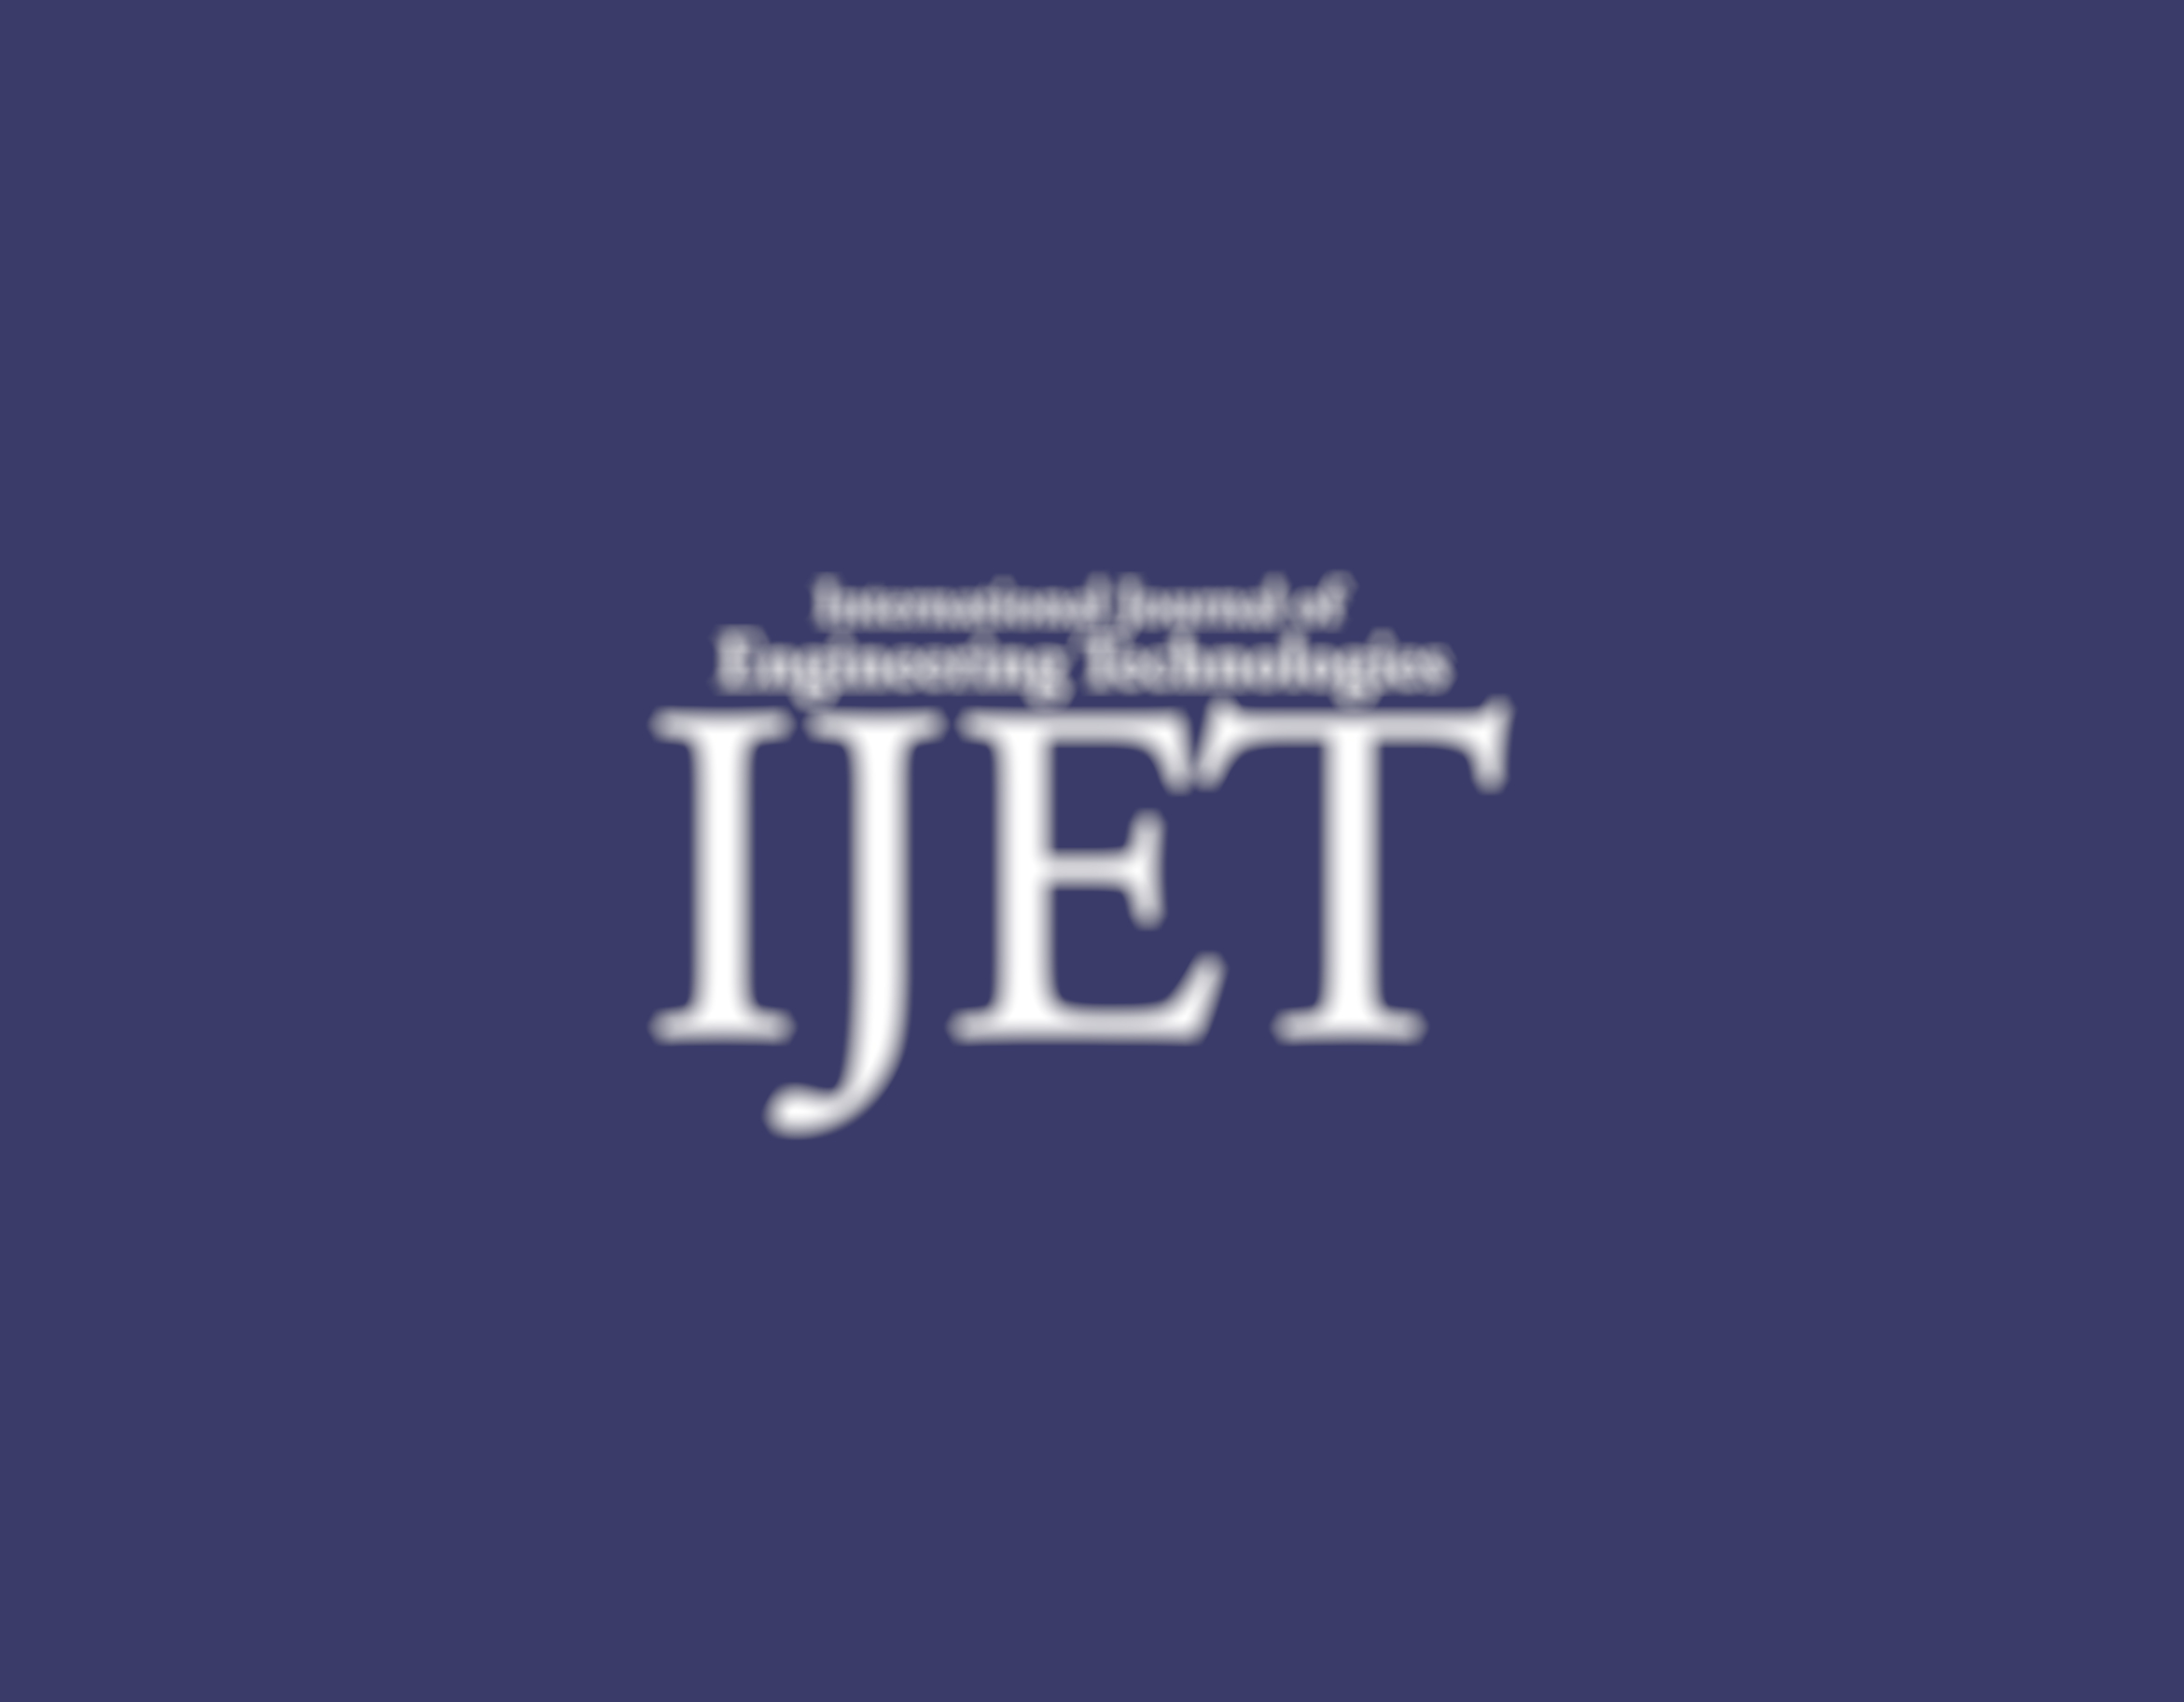 International Journal of Engineering Technologies (IJET) 4. Sayısı Yayınlandı!